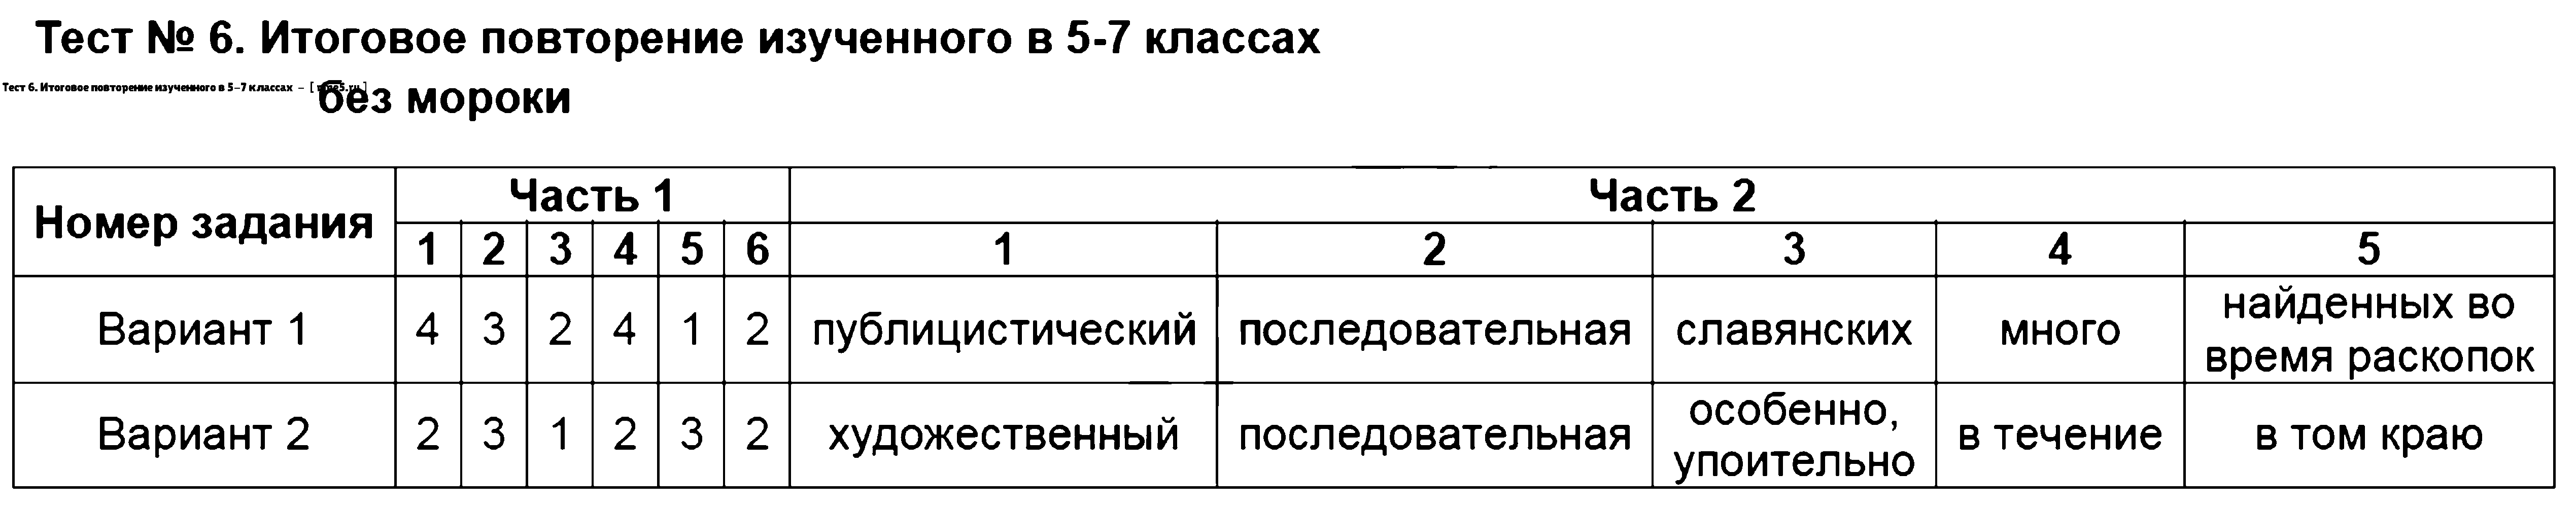 ГДЗ Русский язык 8 класс - Тест 6. Итоговое повторение изученного в 5-7 классах